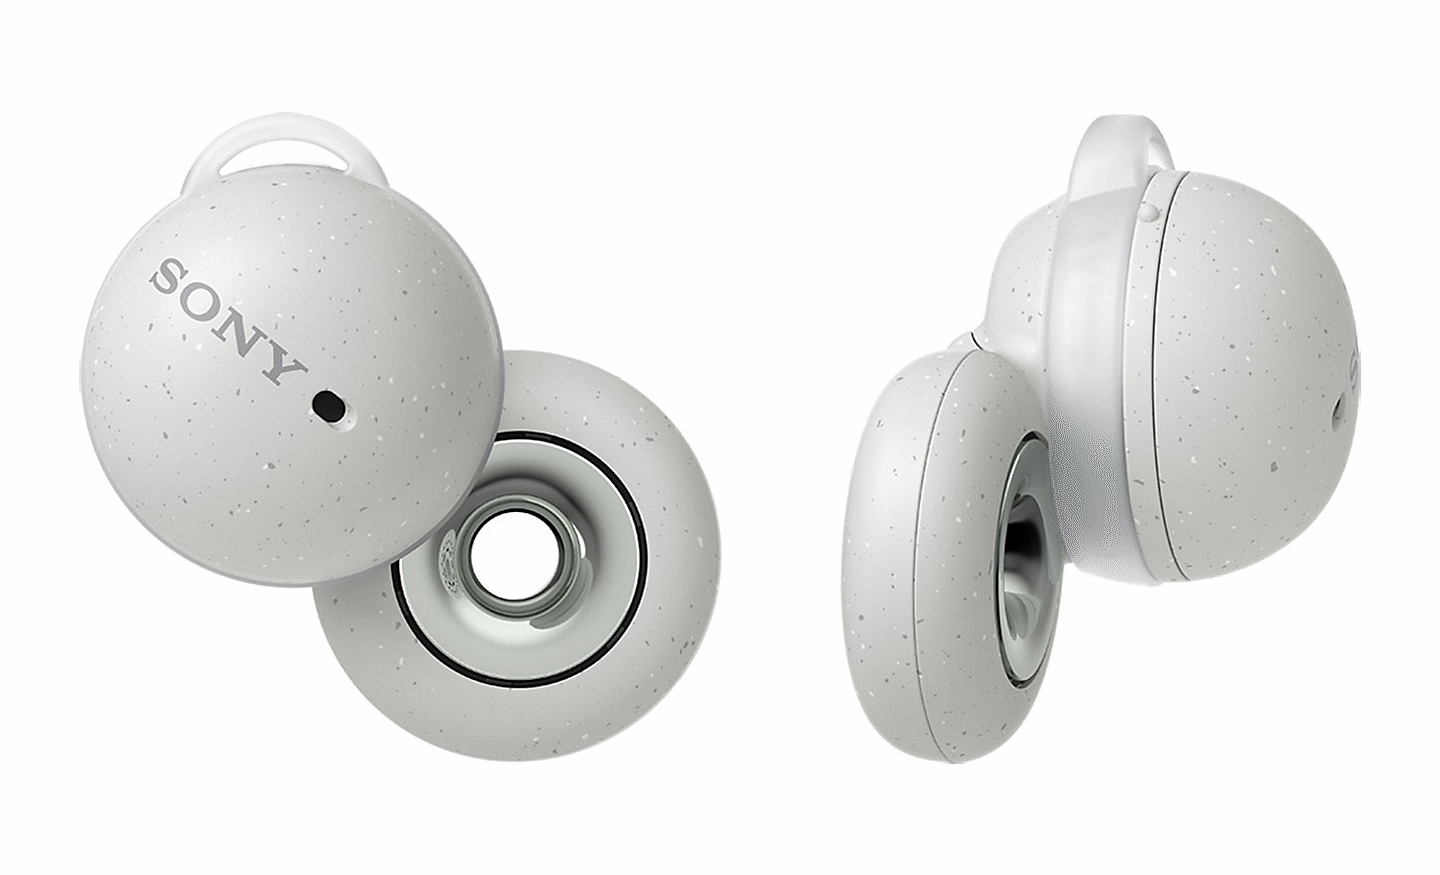 Image des écouteurs Sony LinkBuds en blanc. Un écouteur est présenté de derrière, l'autre de profil